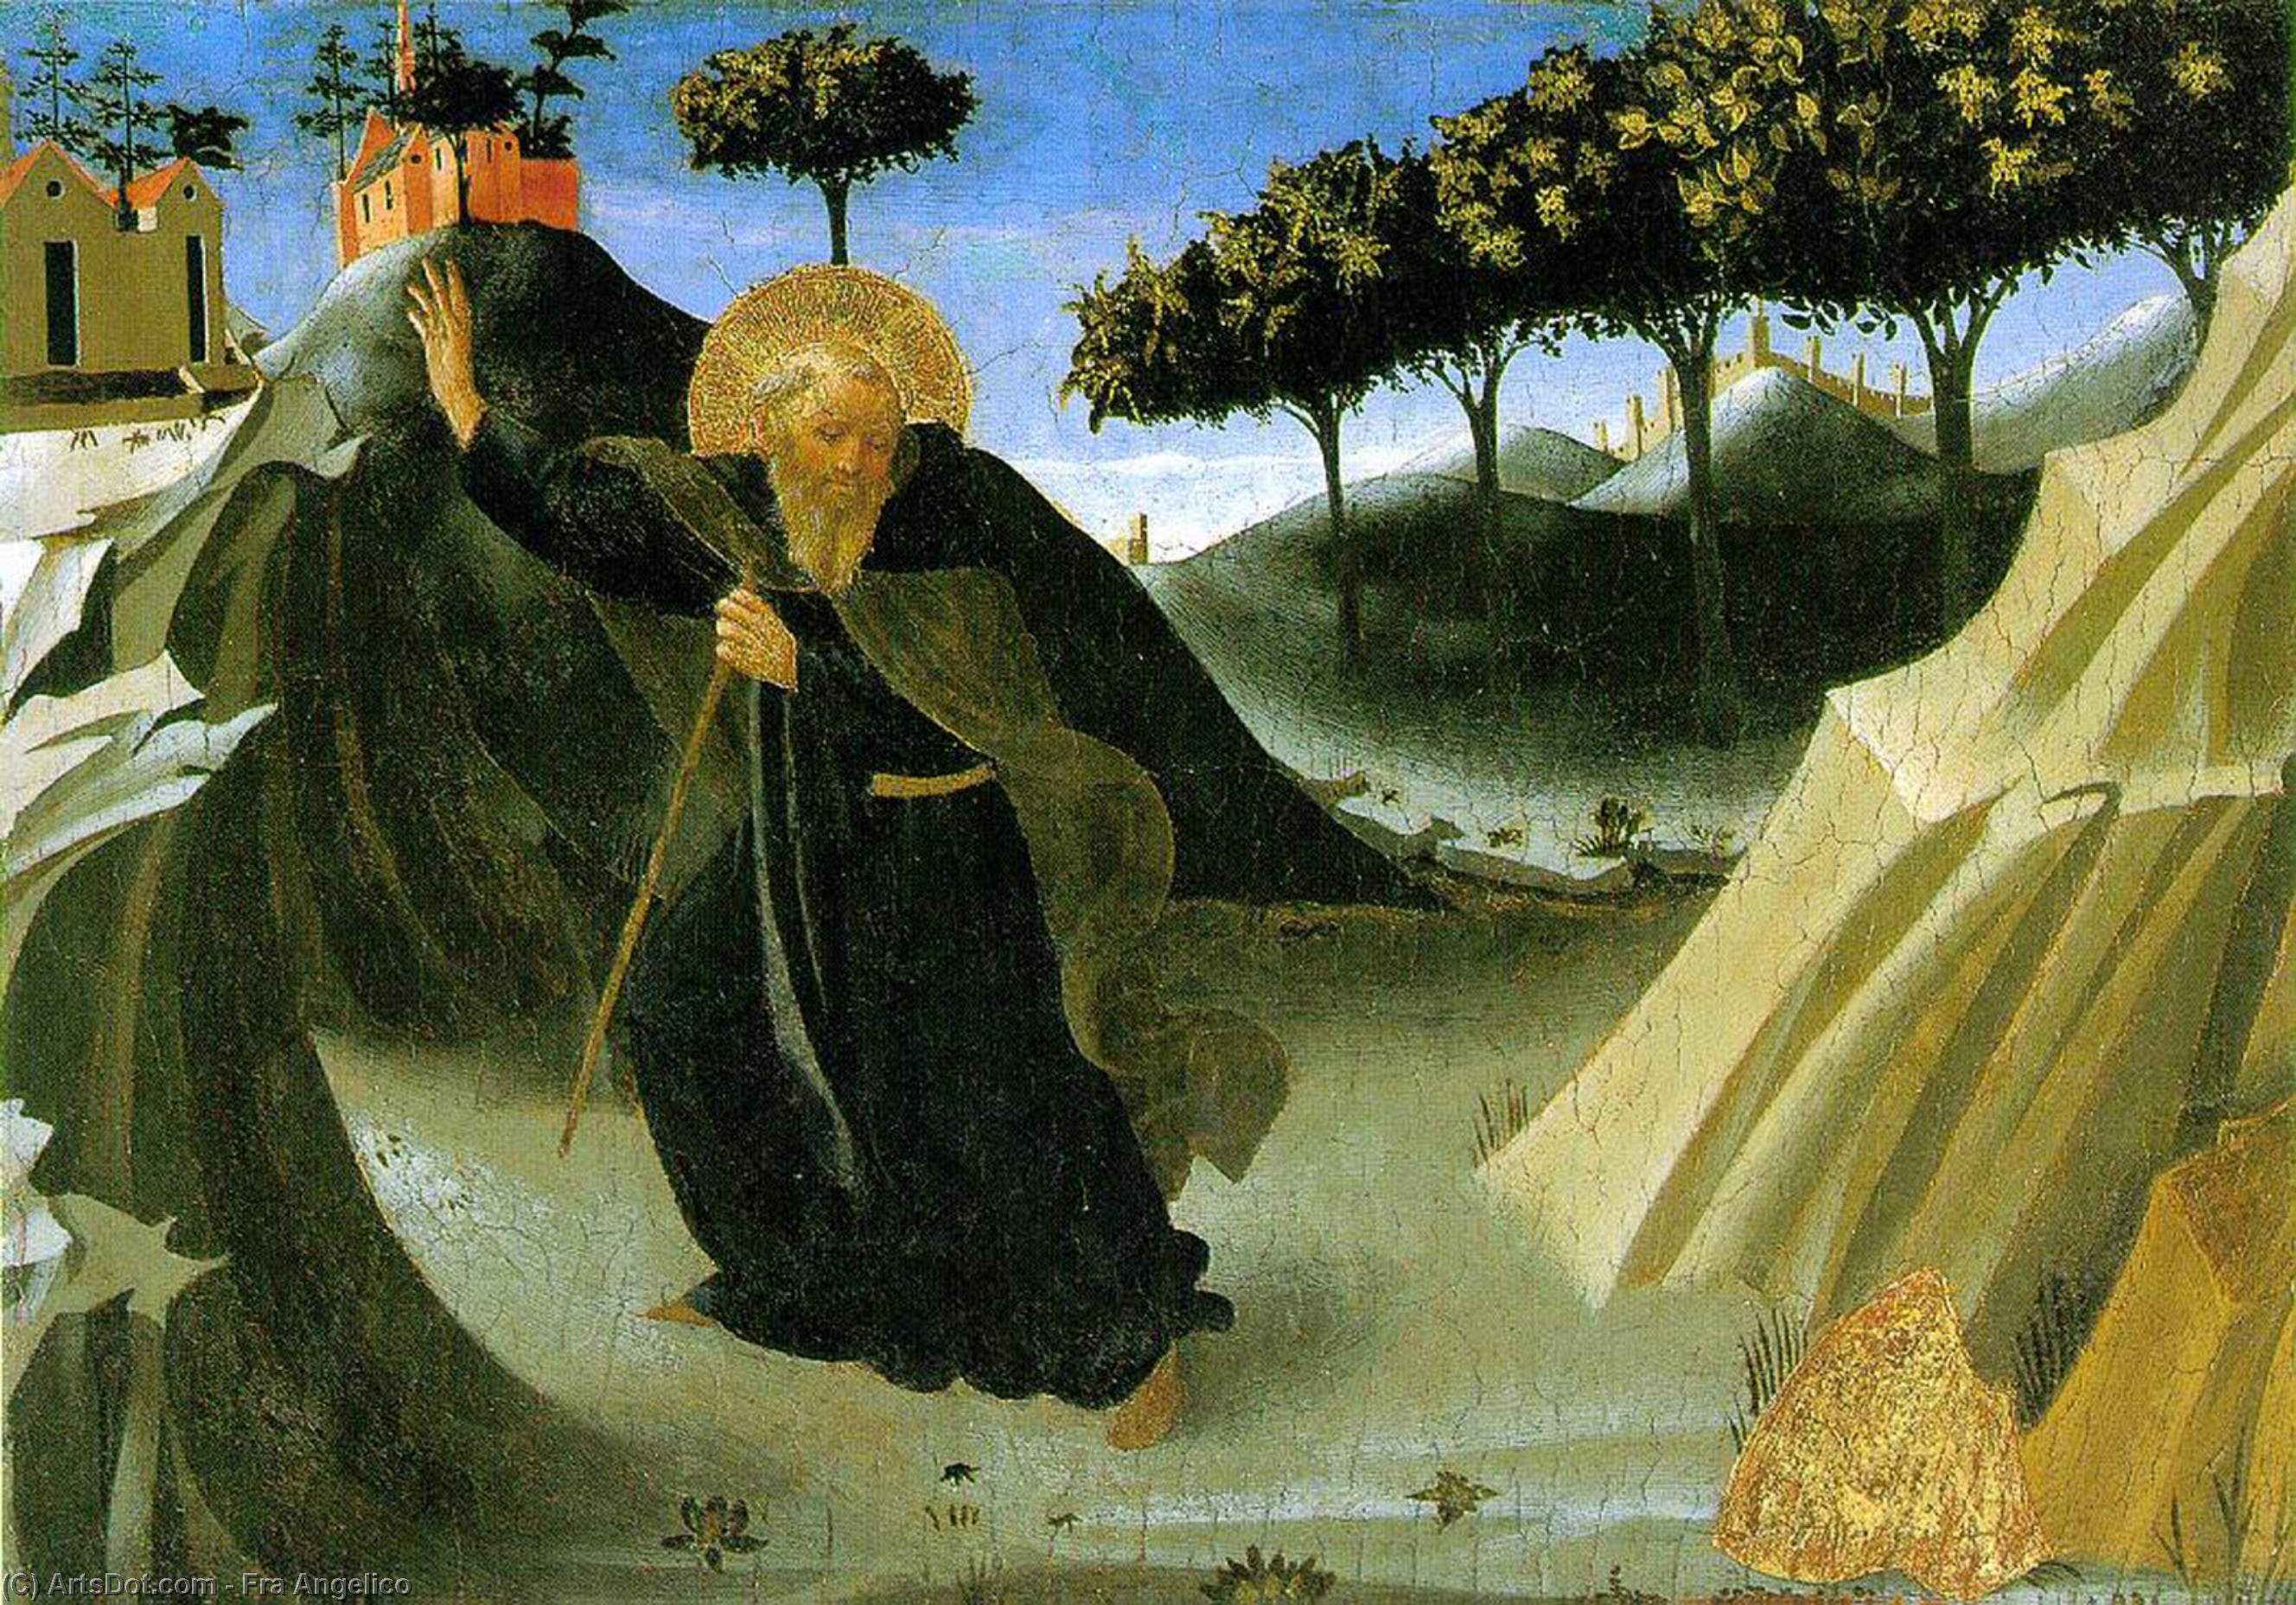 WikiOO.org - Encyclopedia of Fine Arts - Lukisan, Artwork Fra Angelico - San Antonio Abad tentado por un pedazo de oro